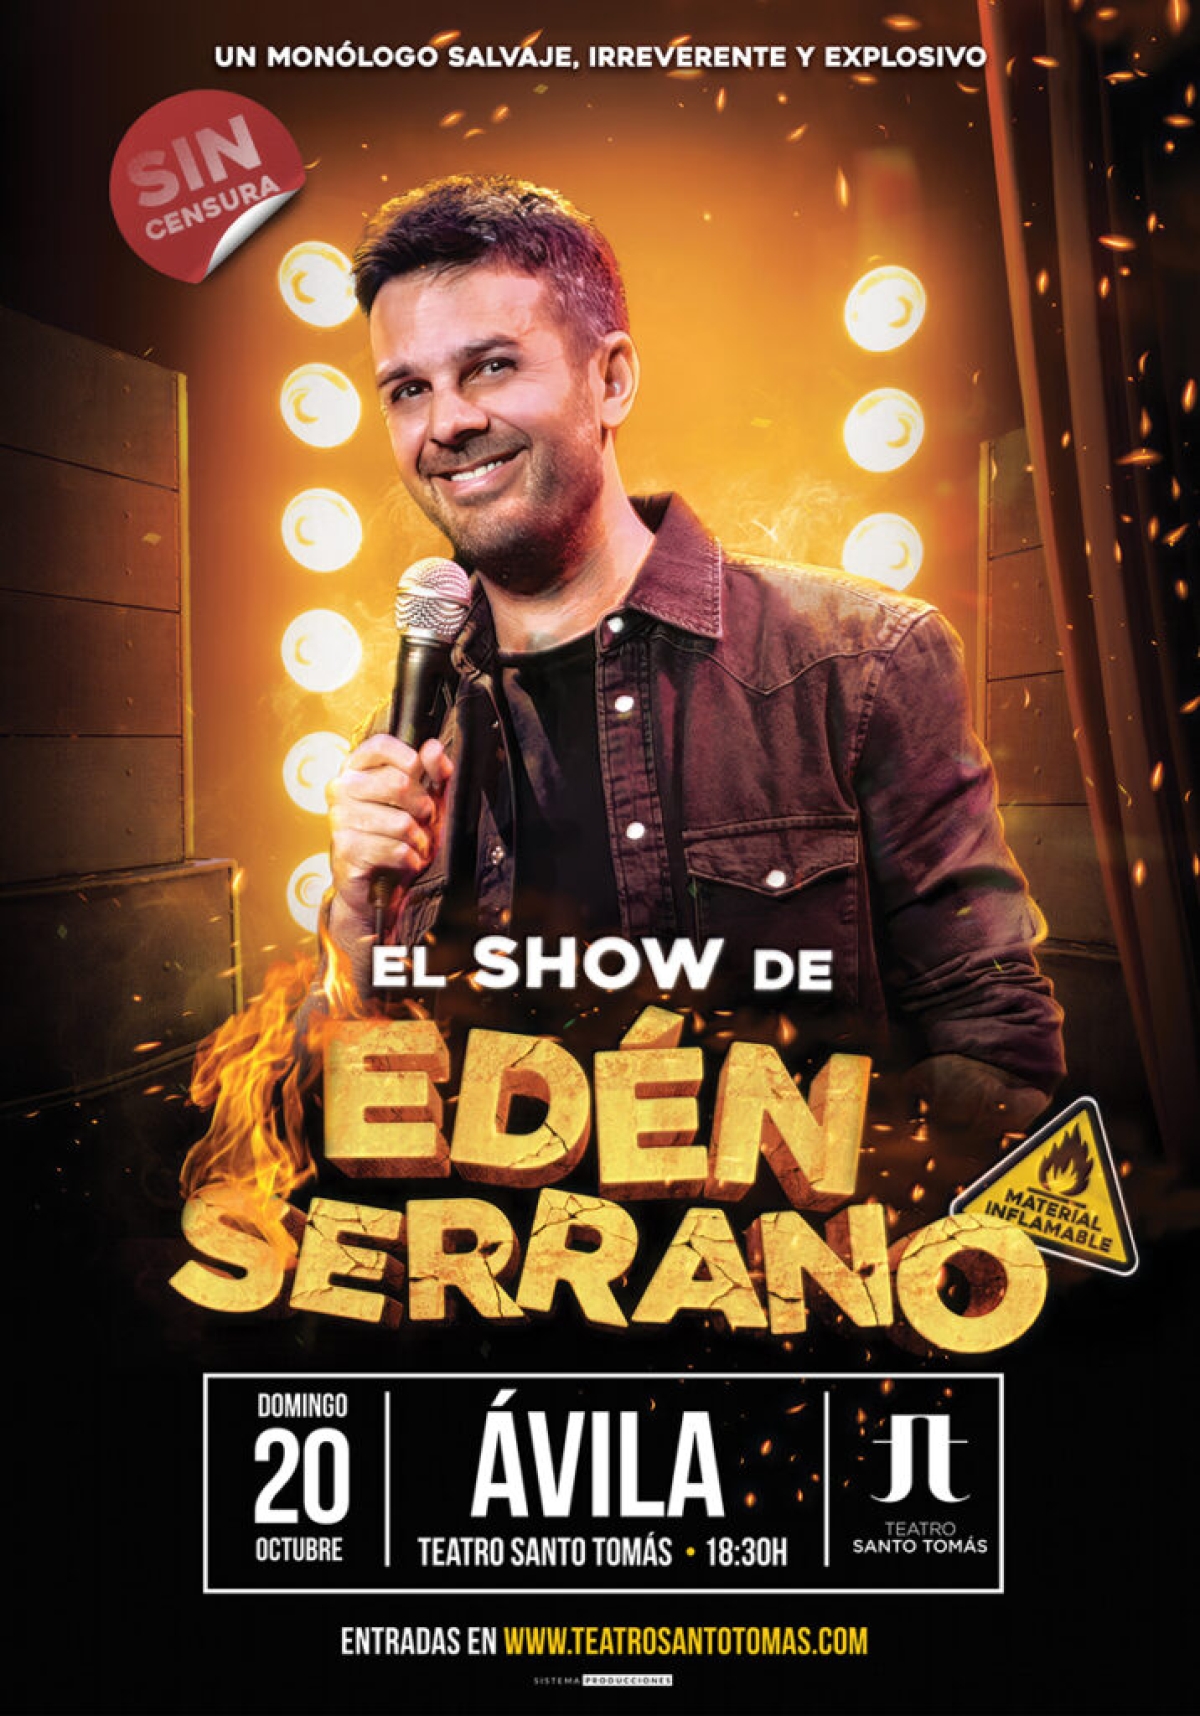  El show de Edén Serrano